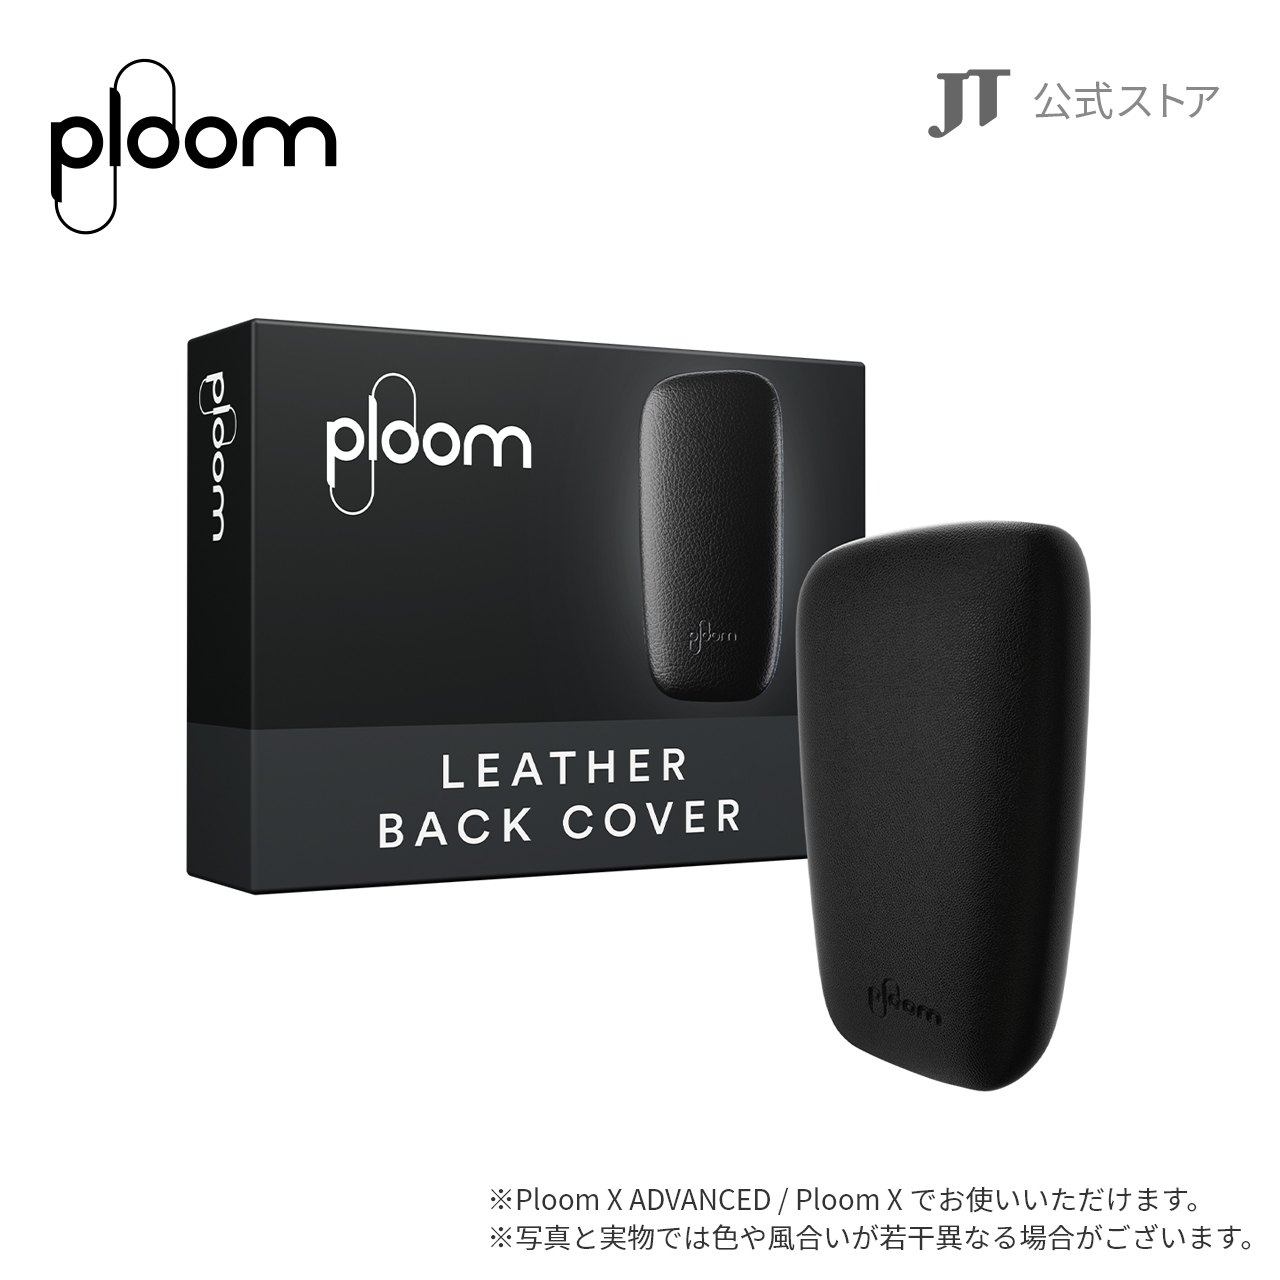 Ploom X レザー・バックカバー ブラックの商品画像